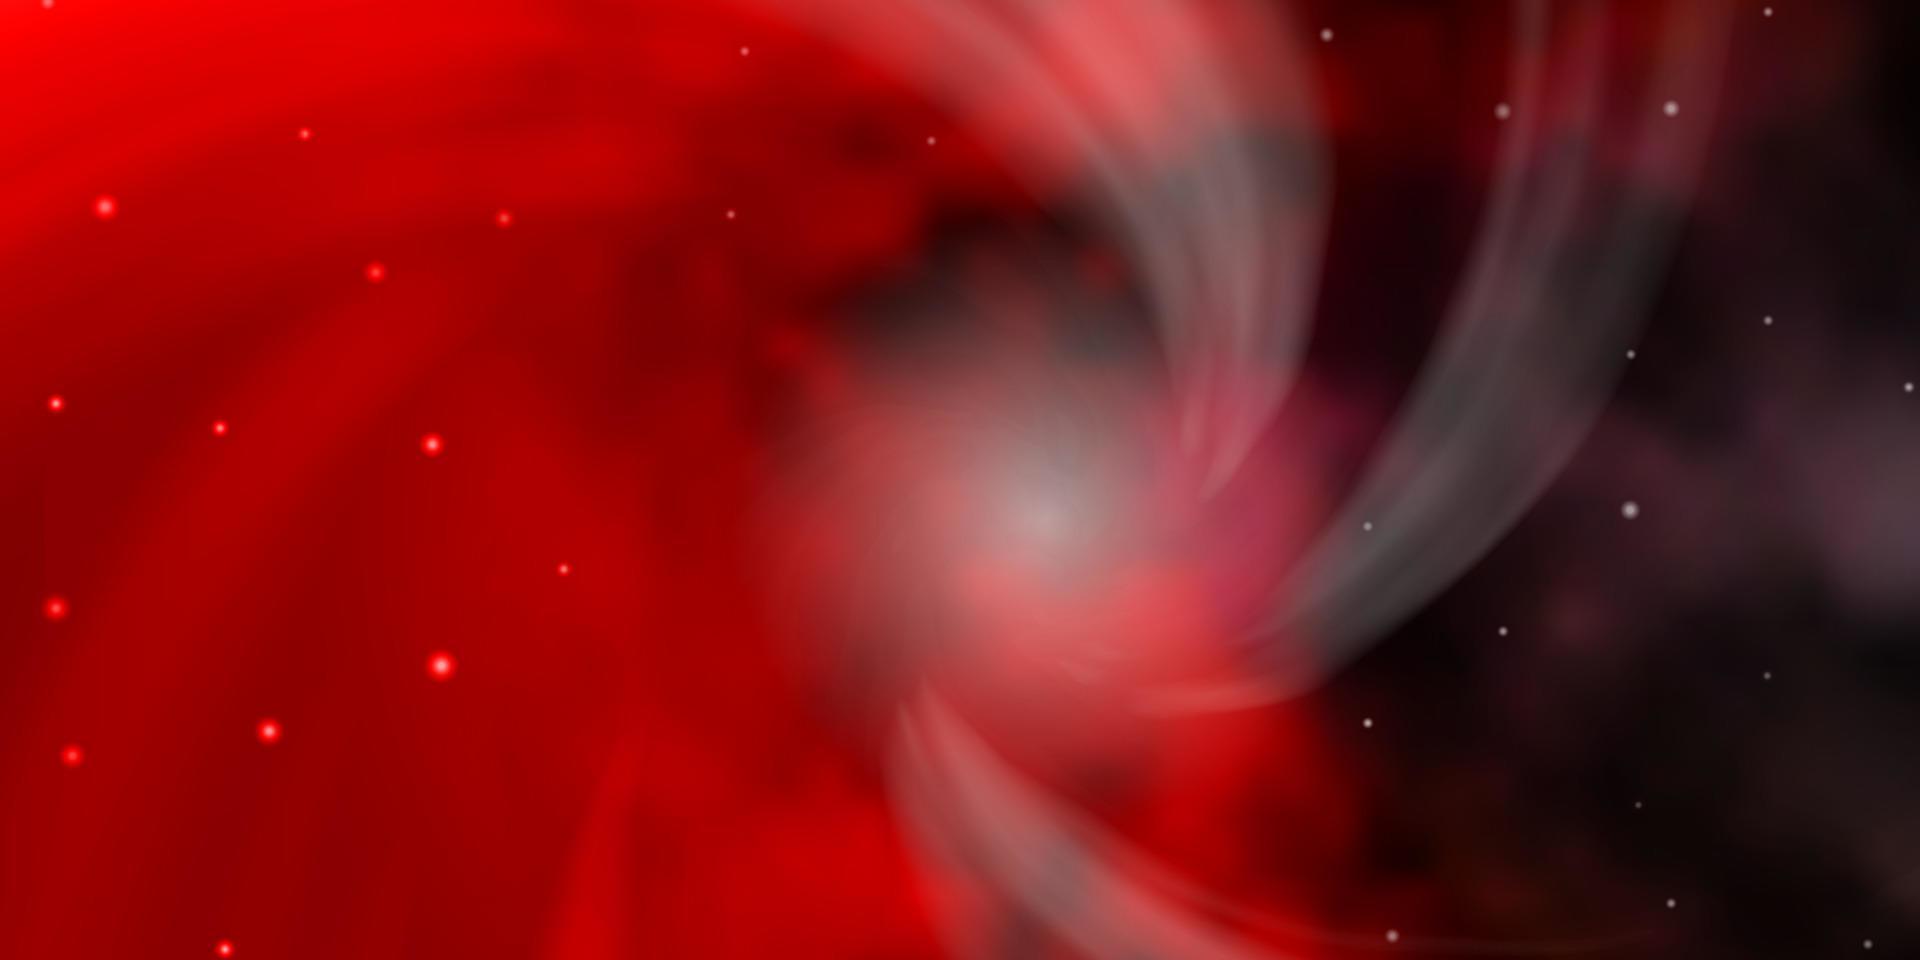 sfondo vettoriale rosso scuro con stelle piccole e grandi.